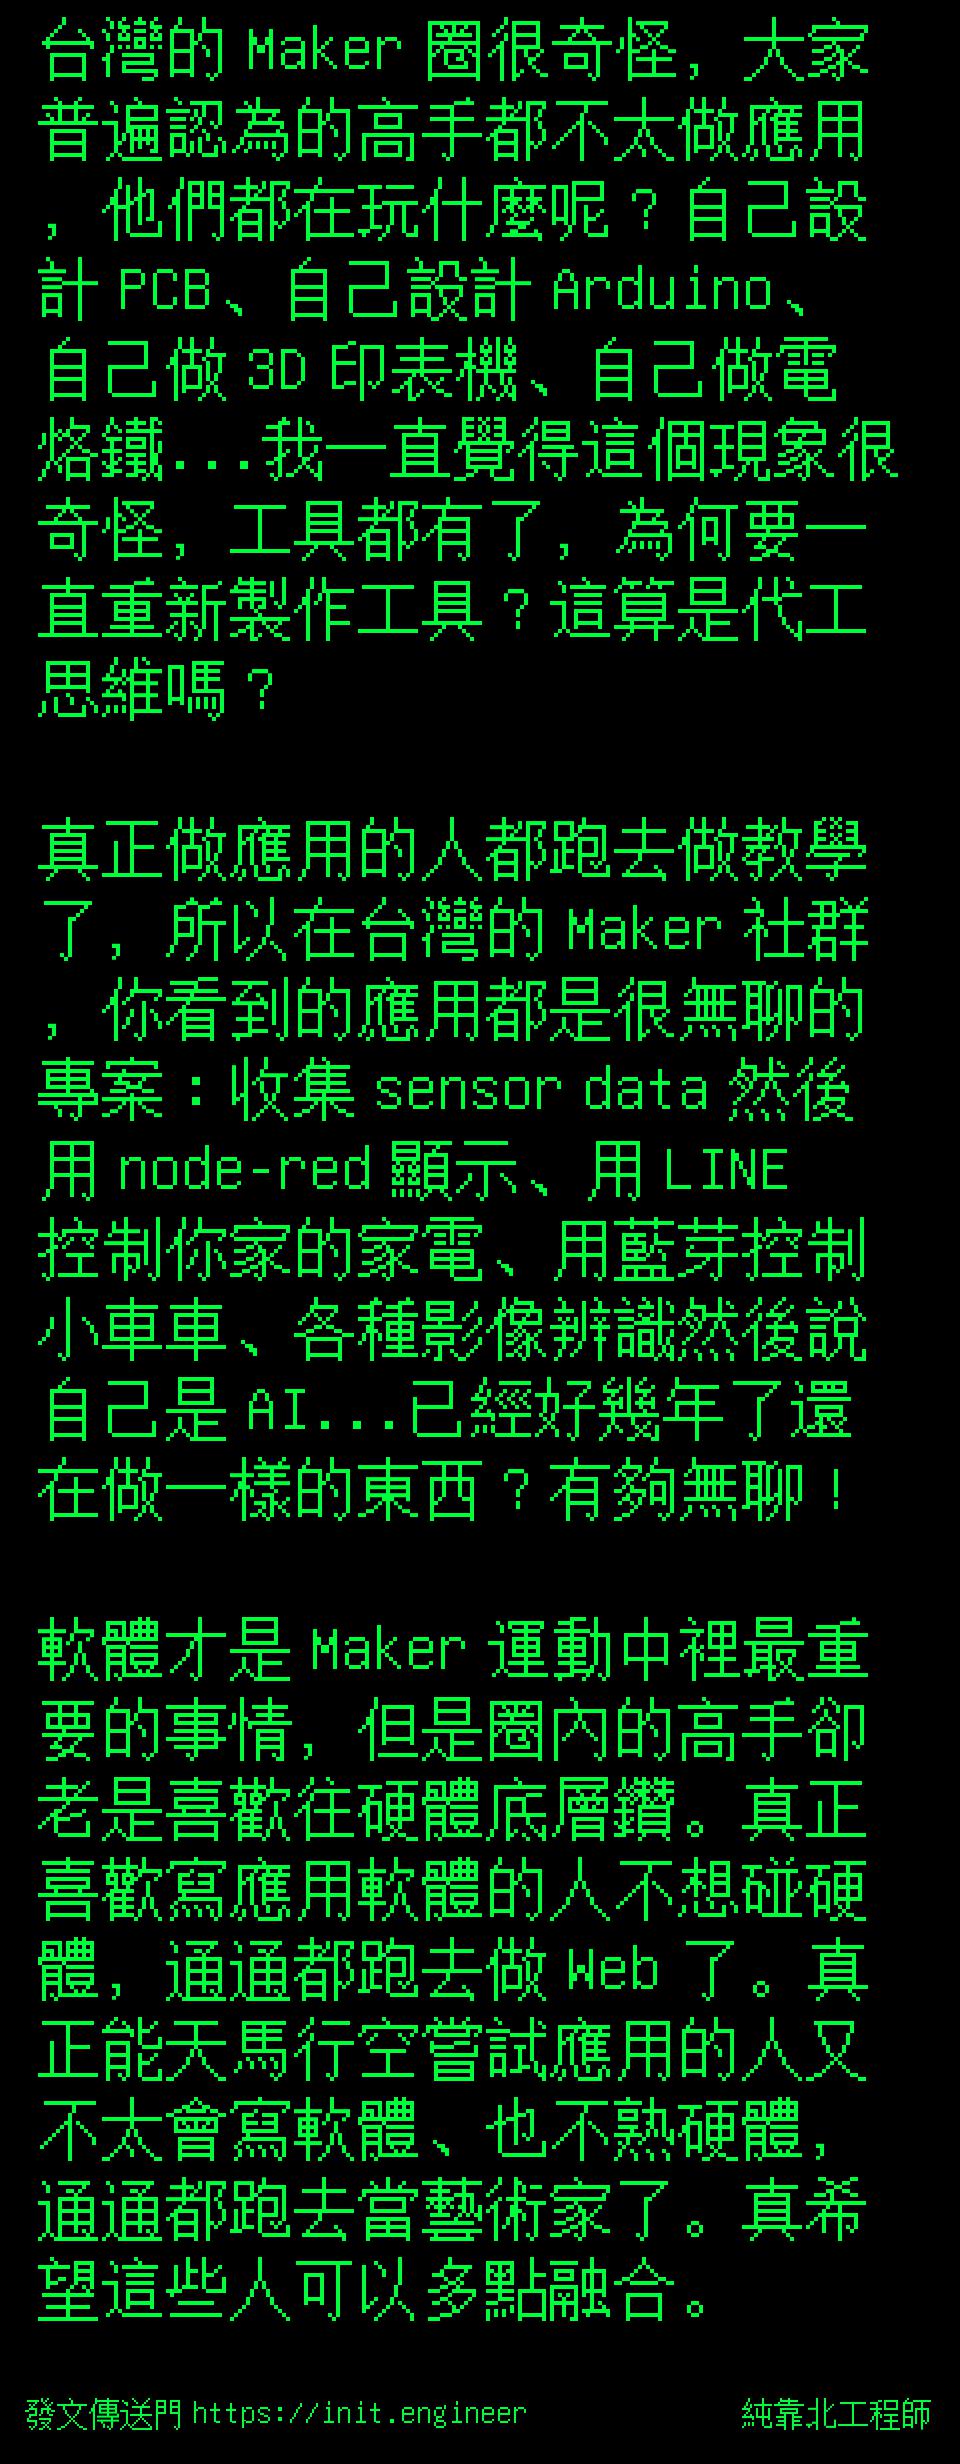 台灣的 Maker 圈很奇怪，大家普遍...